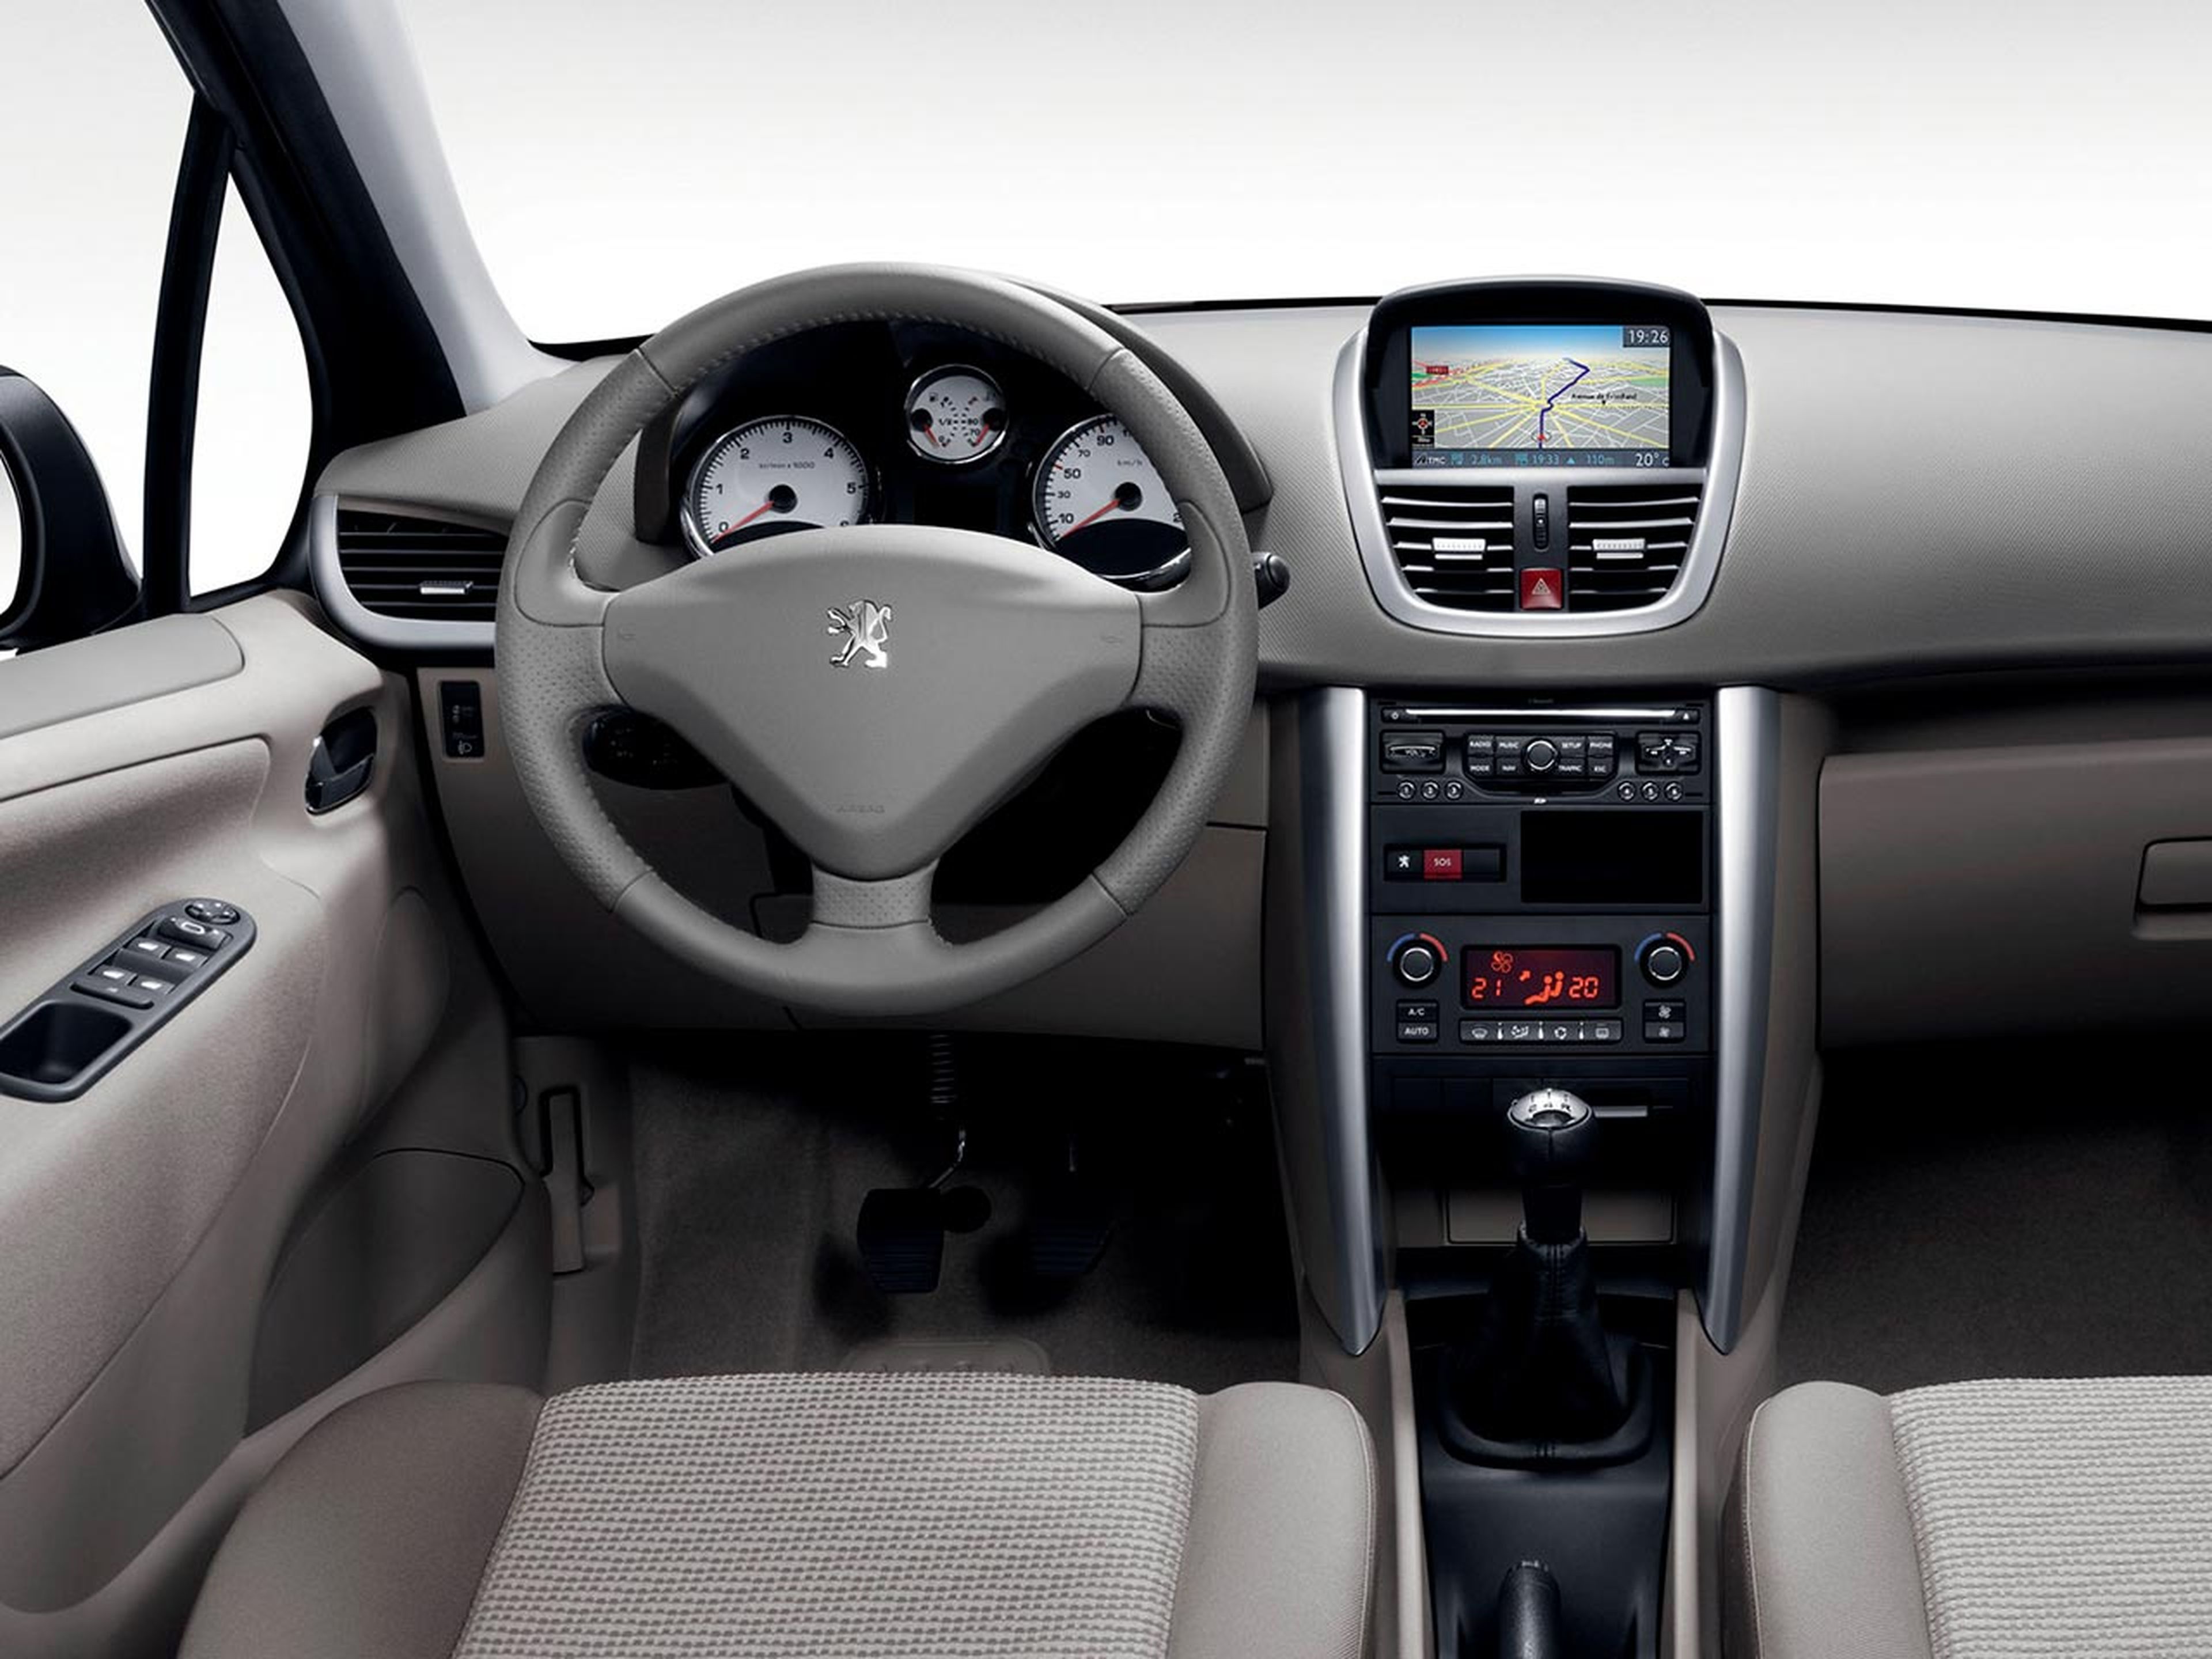 Peugeot 207, todas las versiones y motorizaciones del mercado, con precios,  imágenes, datos técnicos y pruebas.